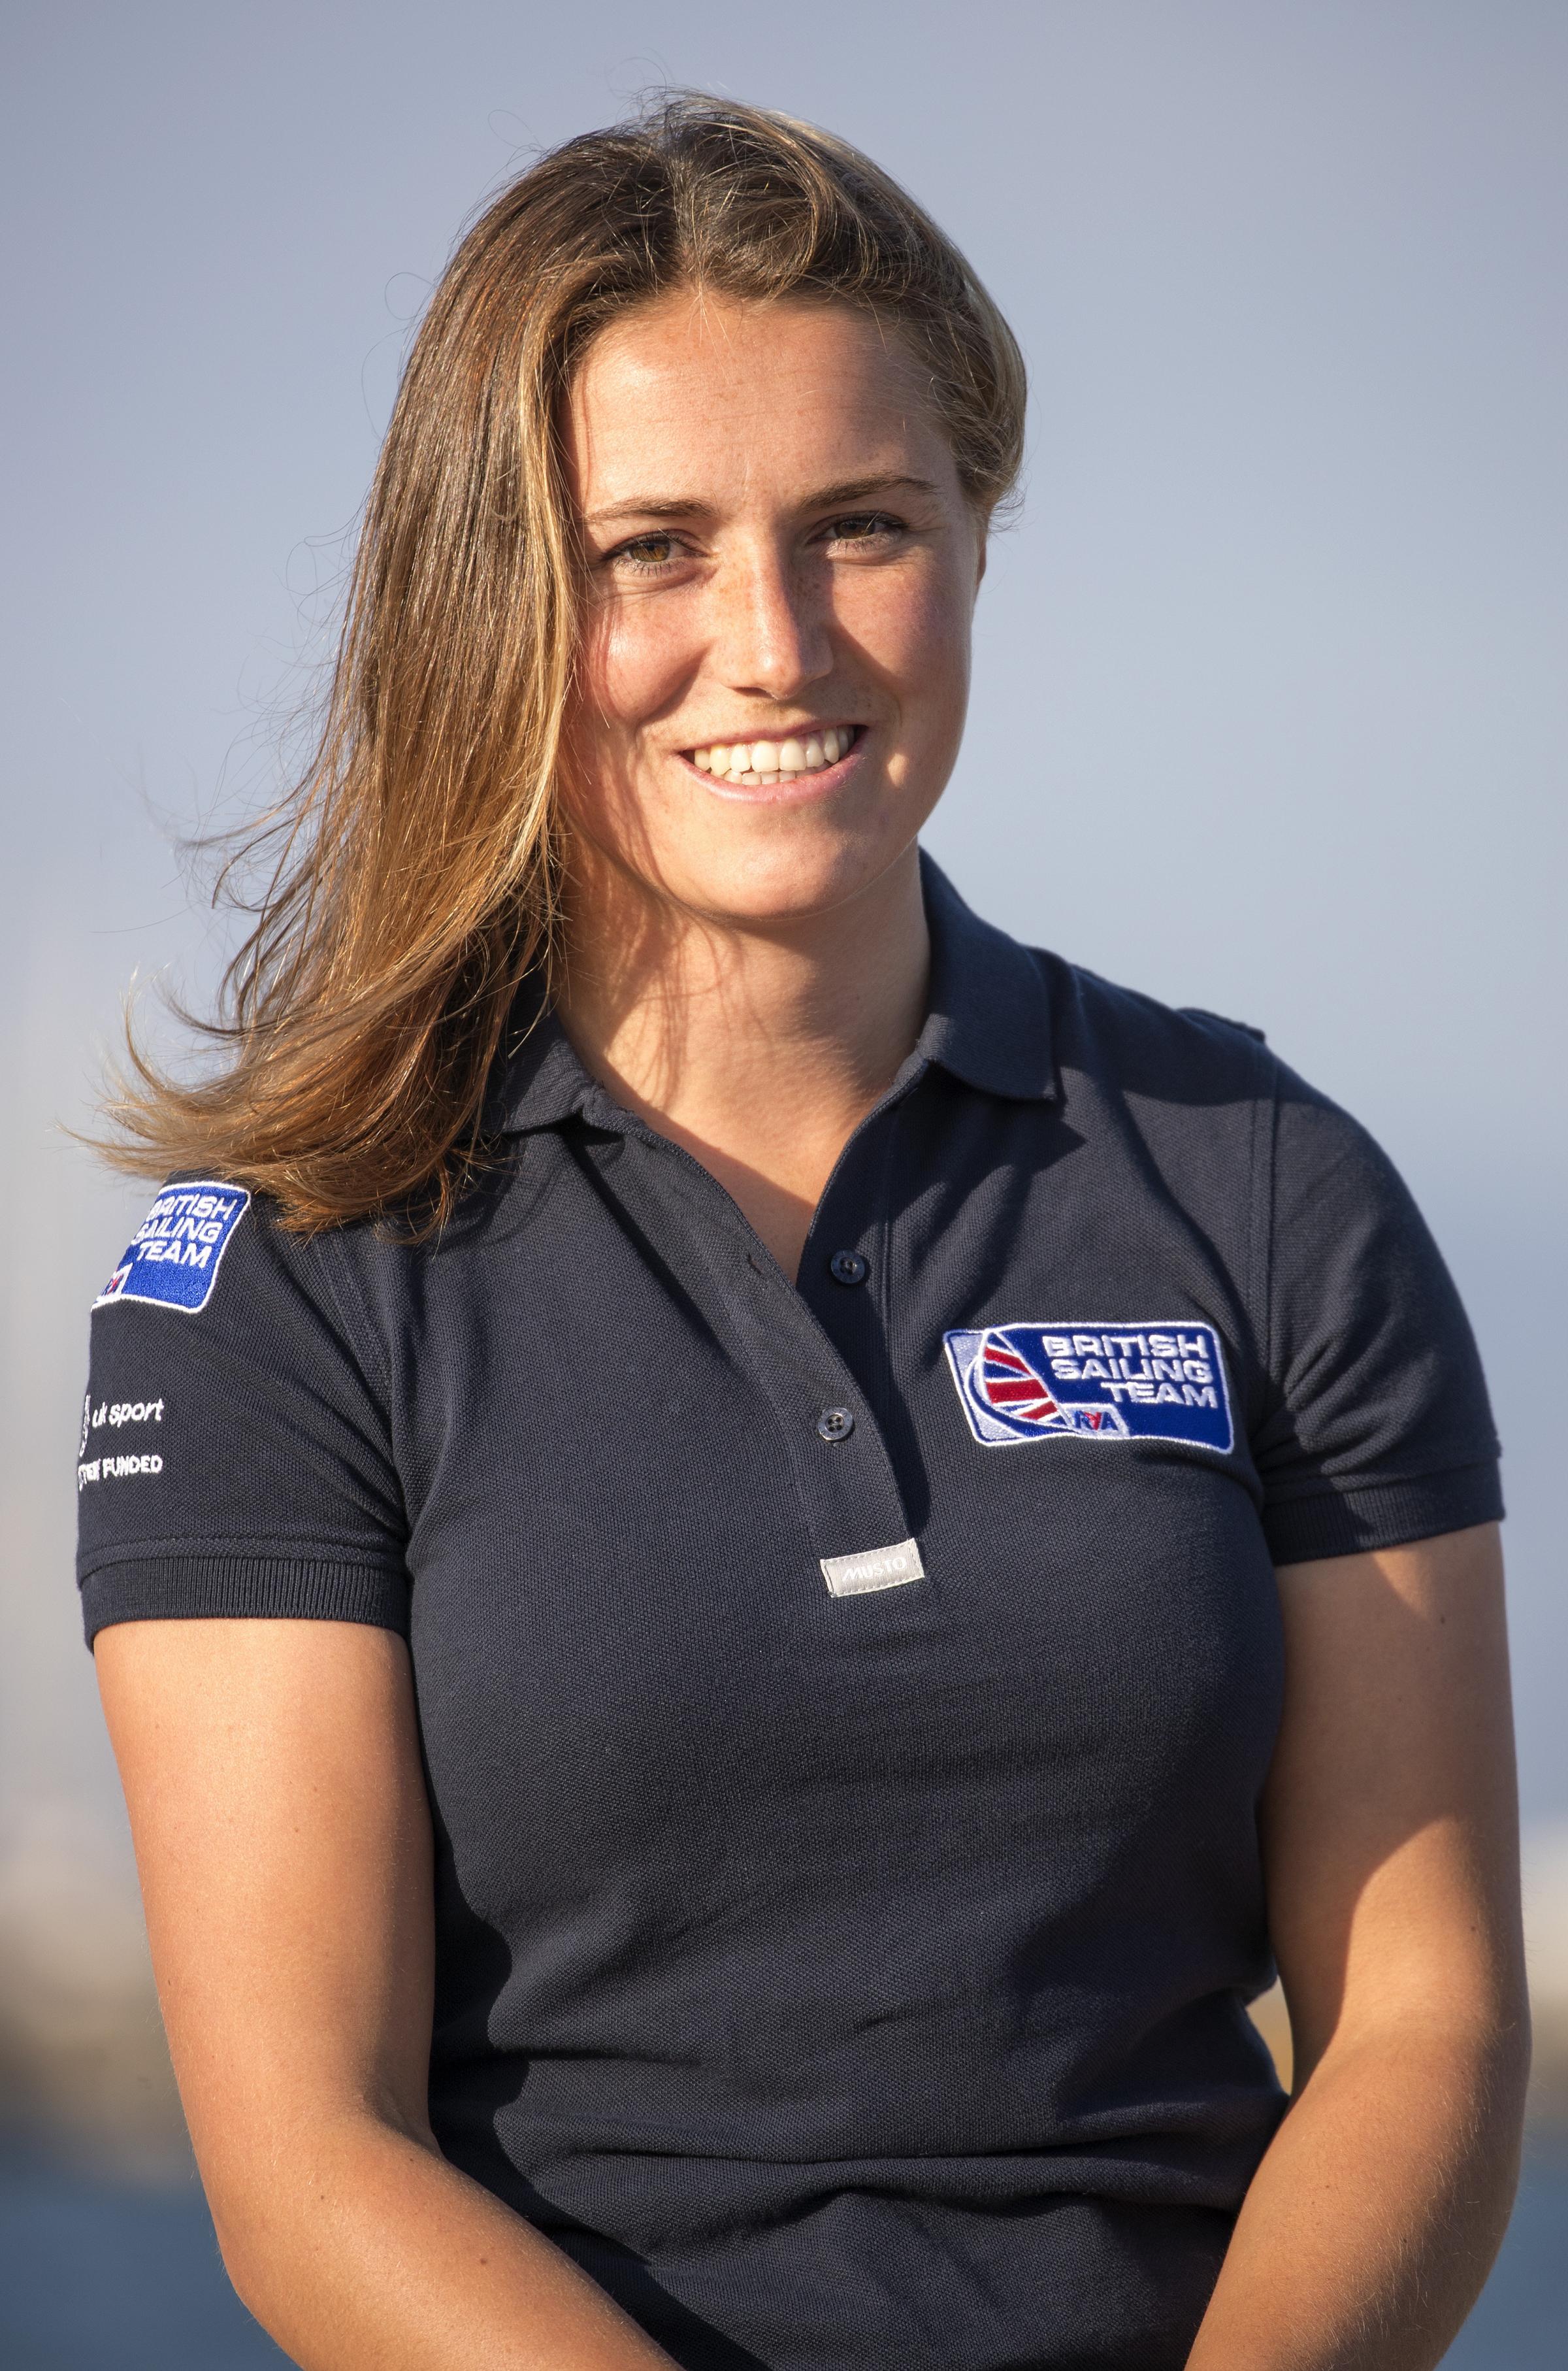 Anna Burnet (Photo - British Sailing Team)